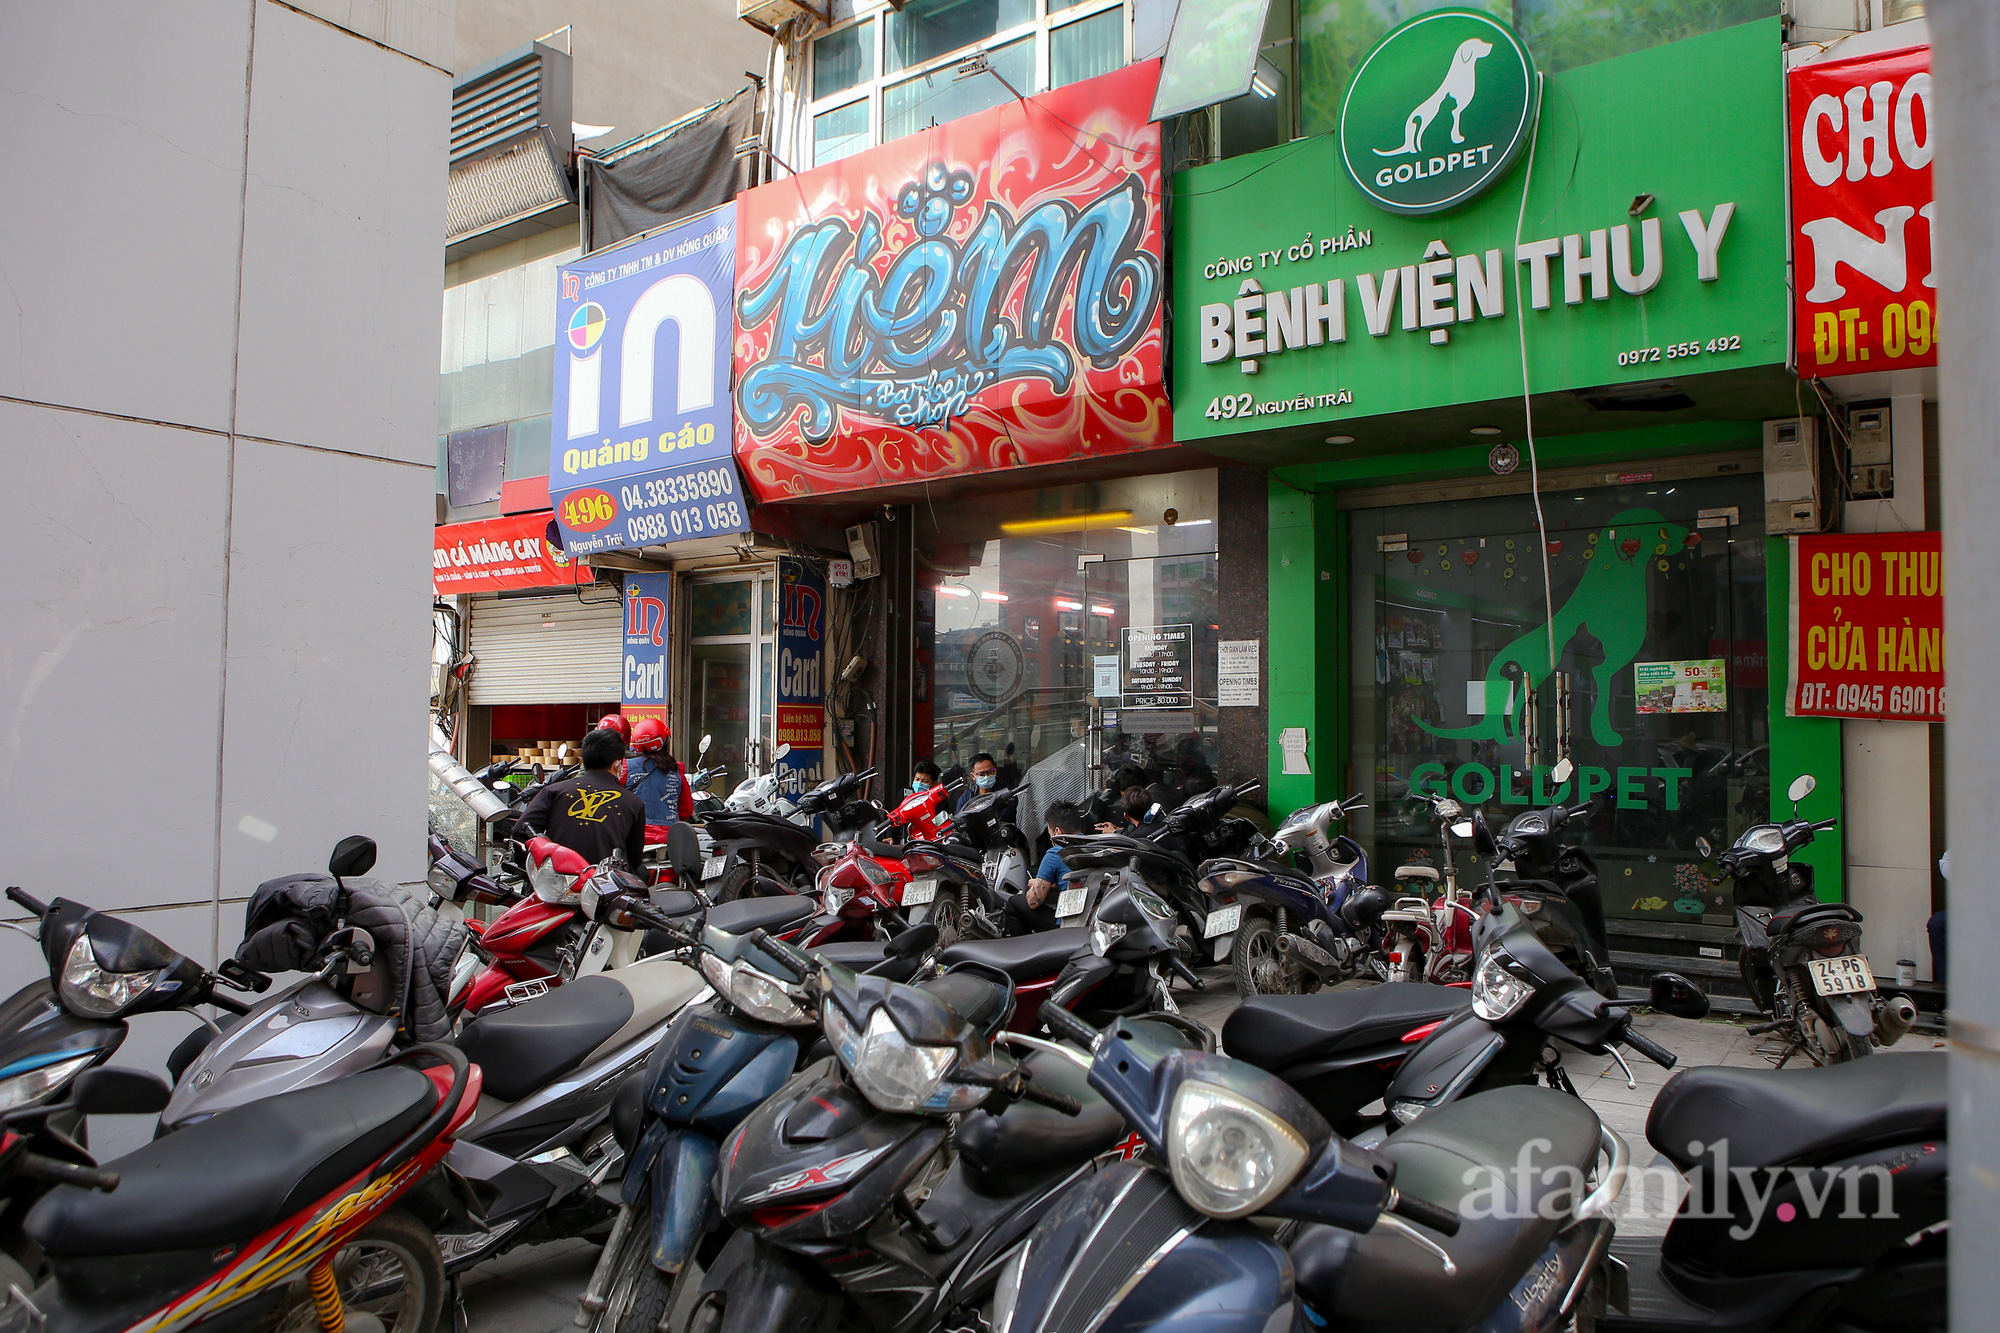 Dịch vụ cắt tóc, rửa xe, dọn nội thất ở Hà Nội hốt bạc dịp Tết, chủ cửa hàng xắn tay làm cùng nhân viên cũng không hết việc - Ảnh 18.